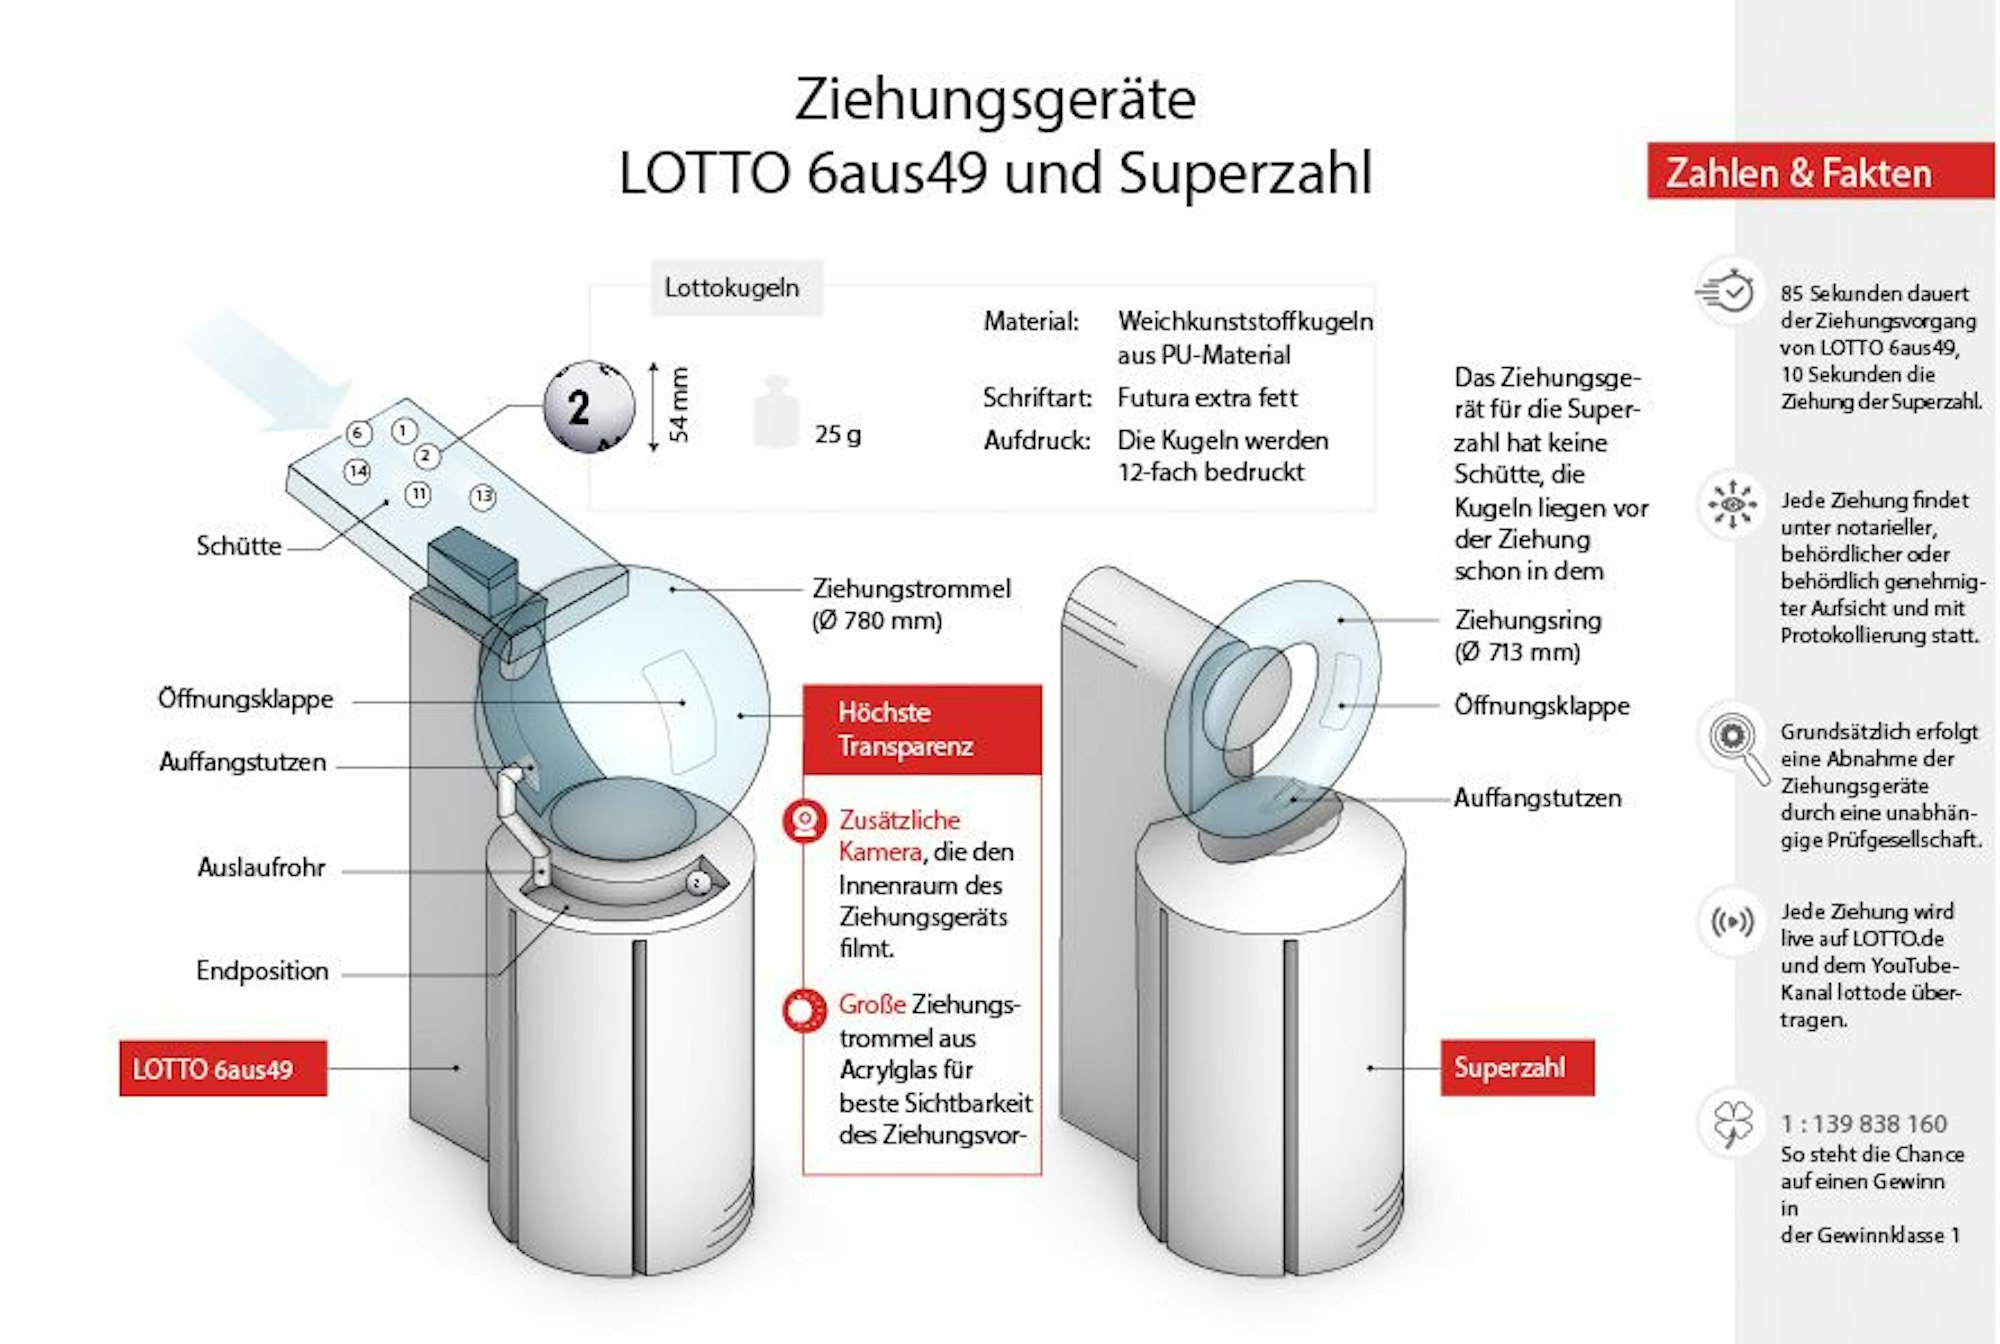 Die Infografik veranschaulicht die Details zu den neuen Ziehungsgeräten für LOTTO 6aus49 und für die Superzahl.